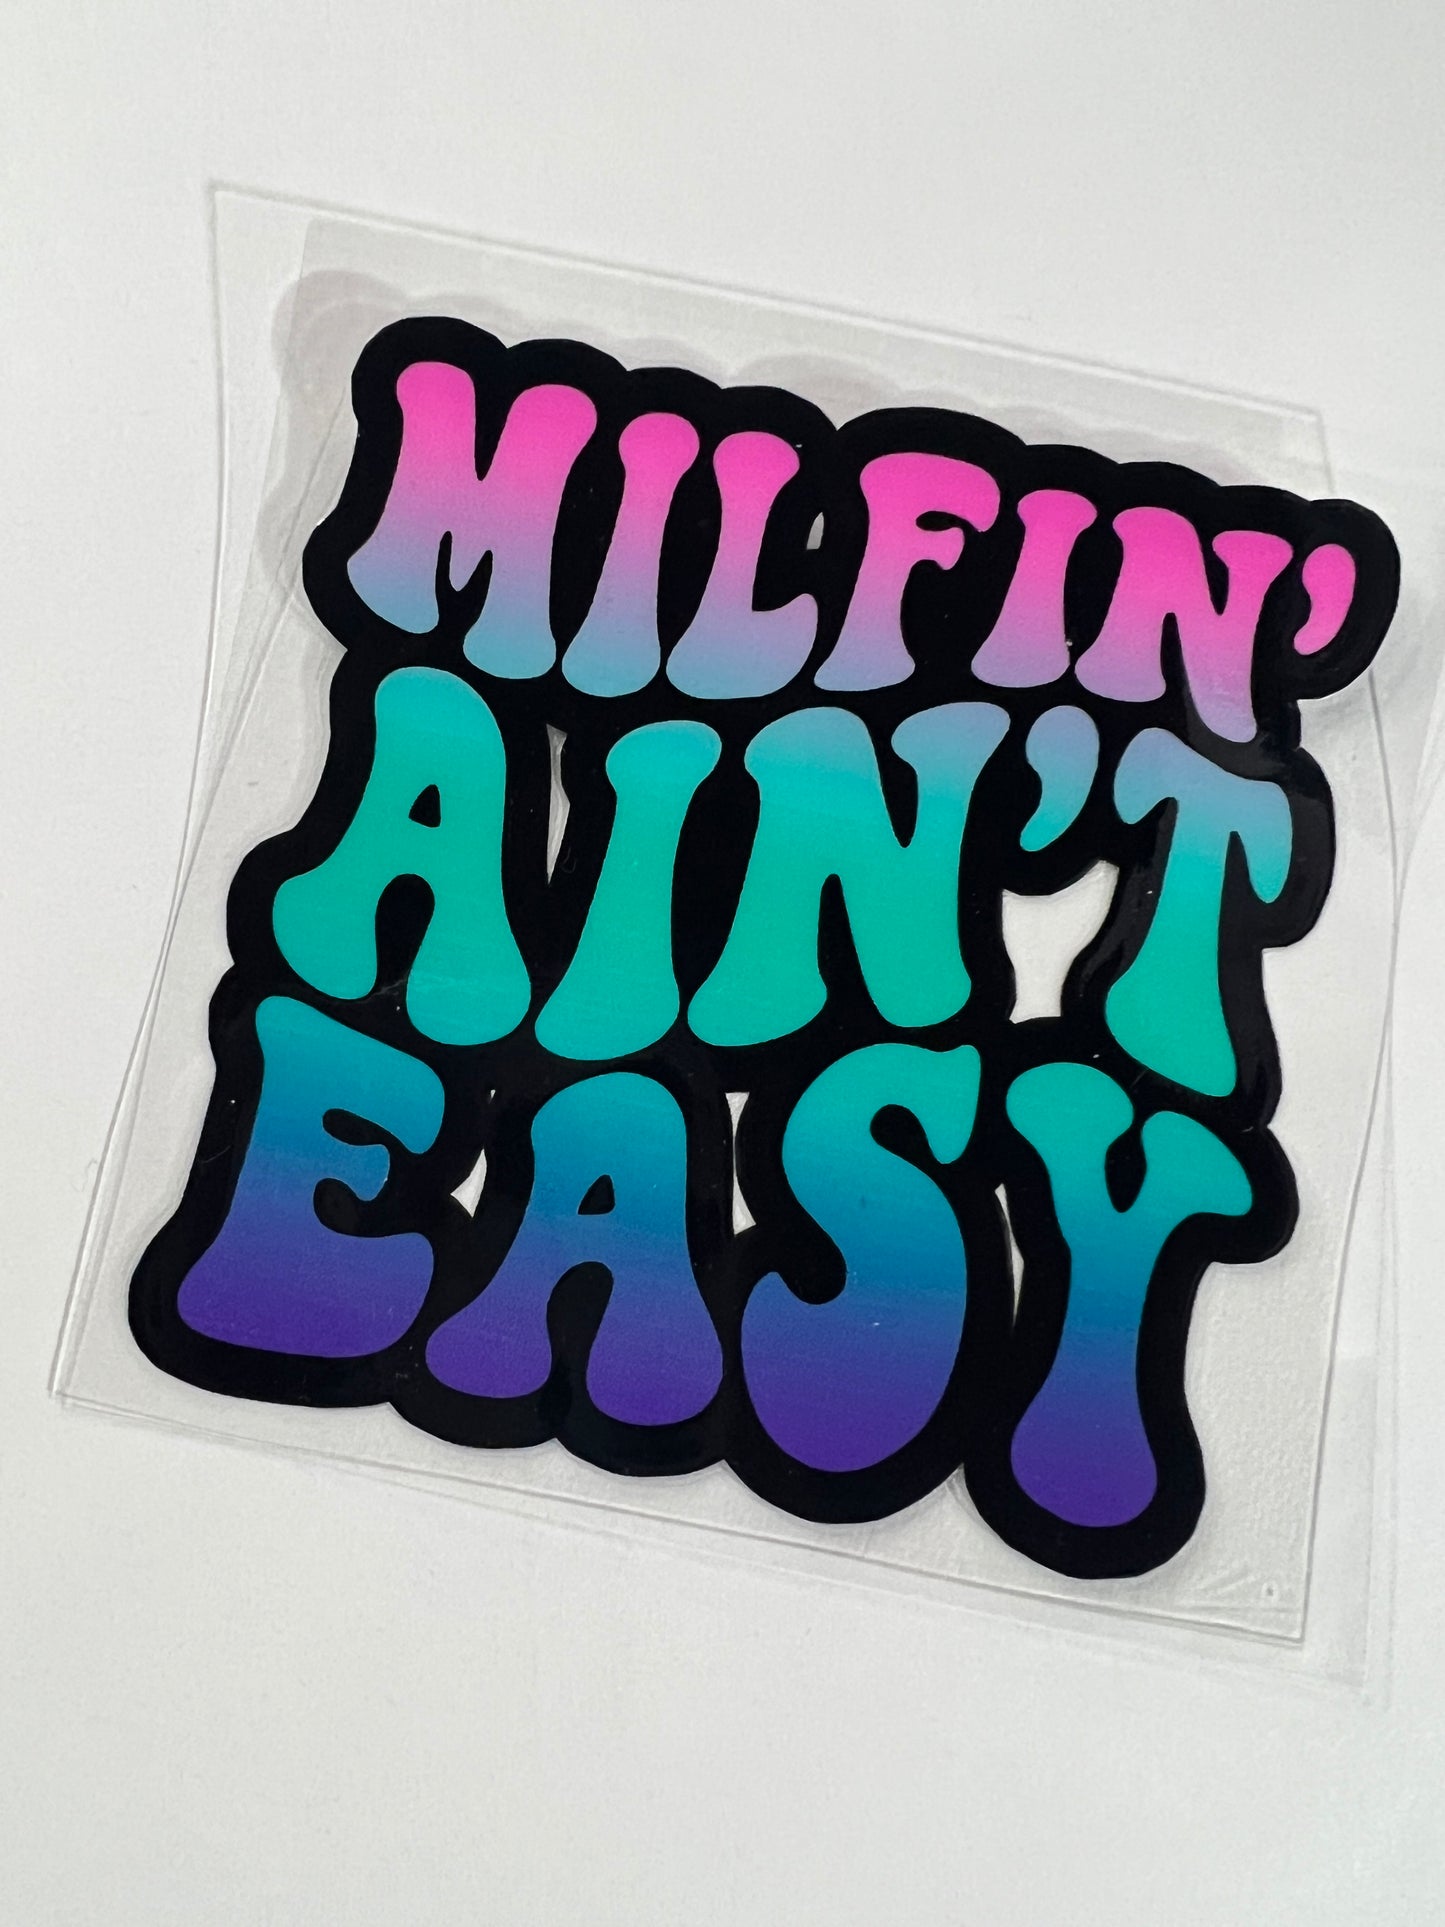 Milfin Aint Easy